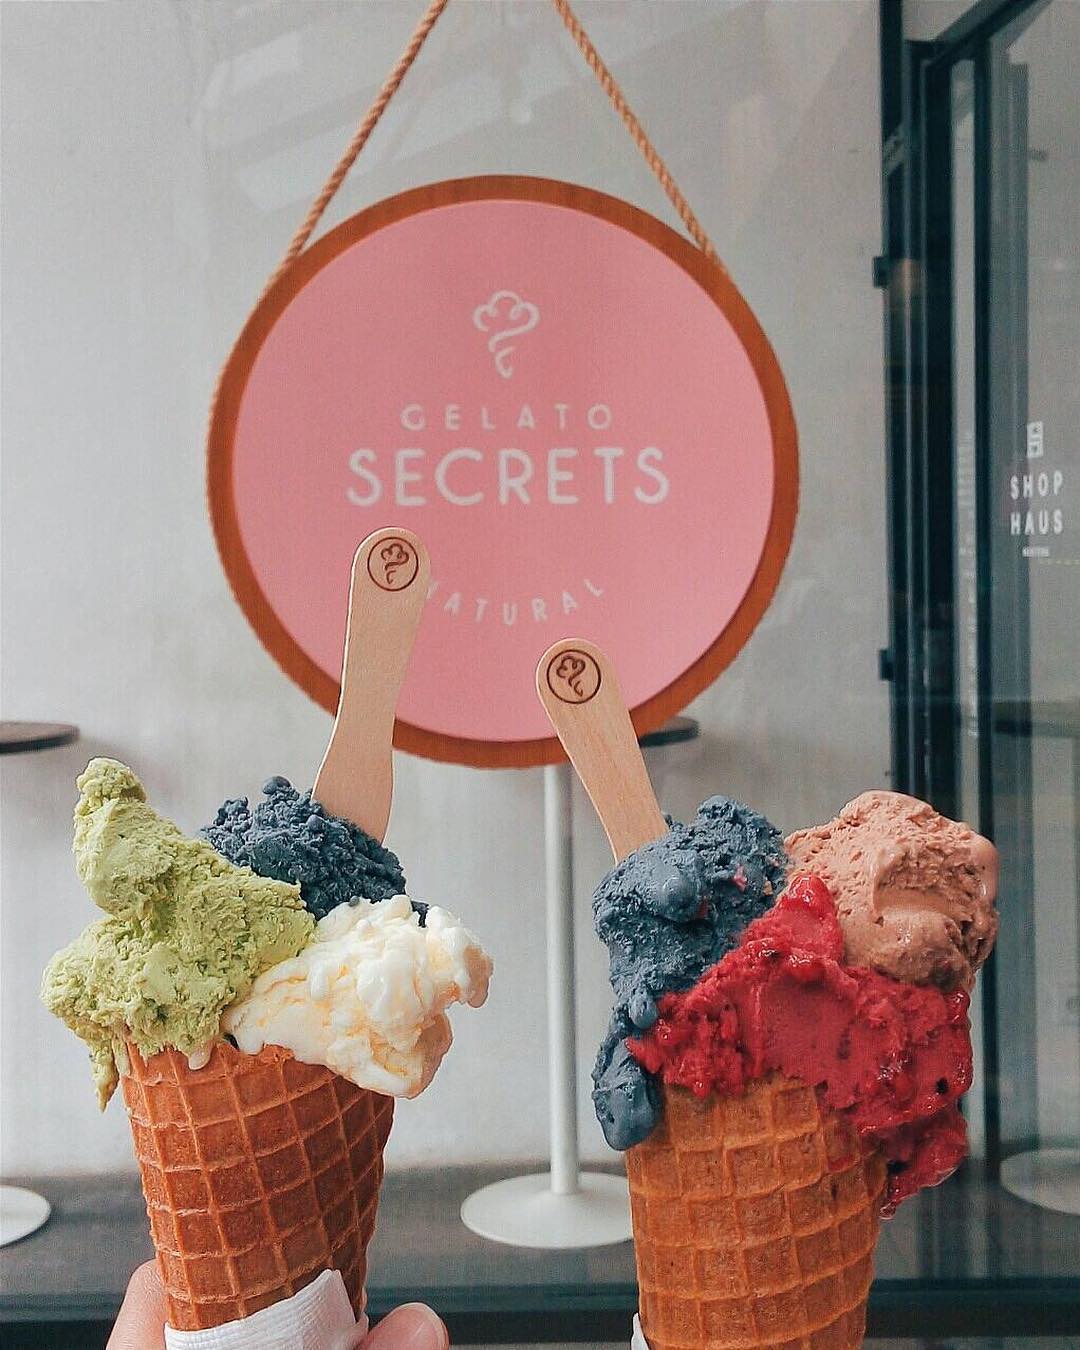 gelato di jakarta - gelato secrets